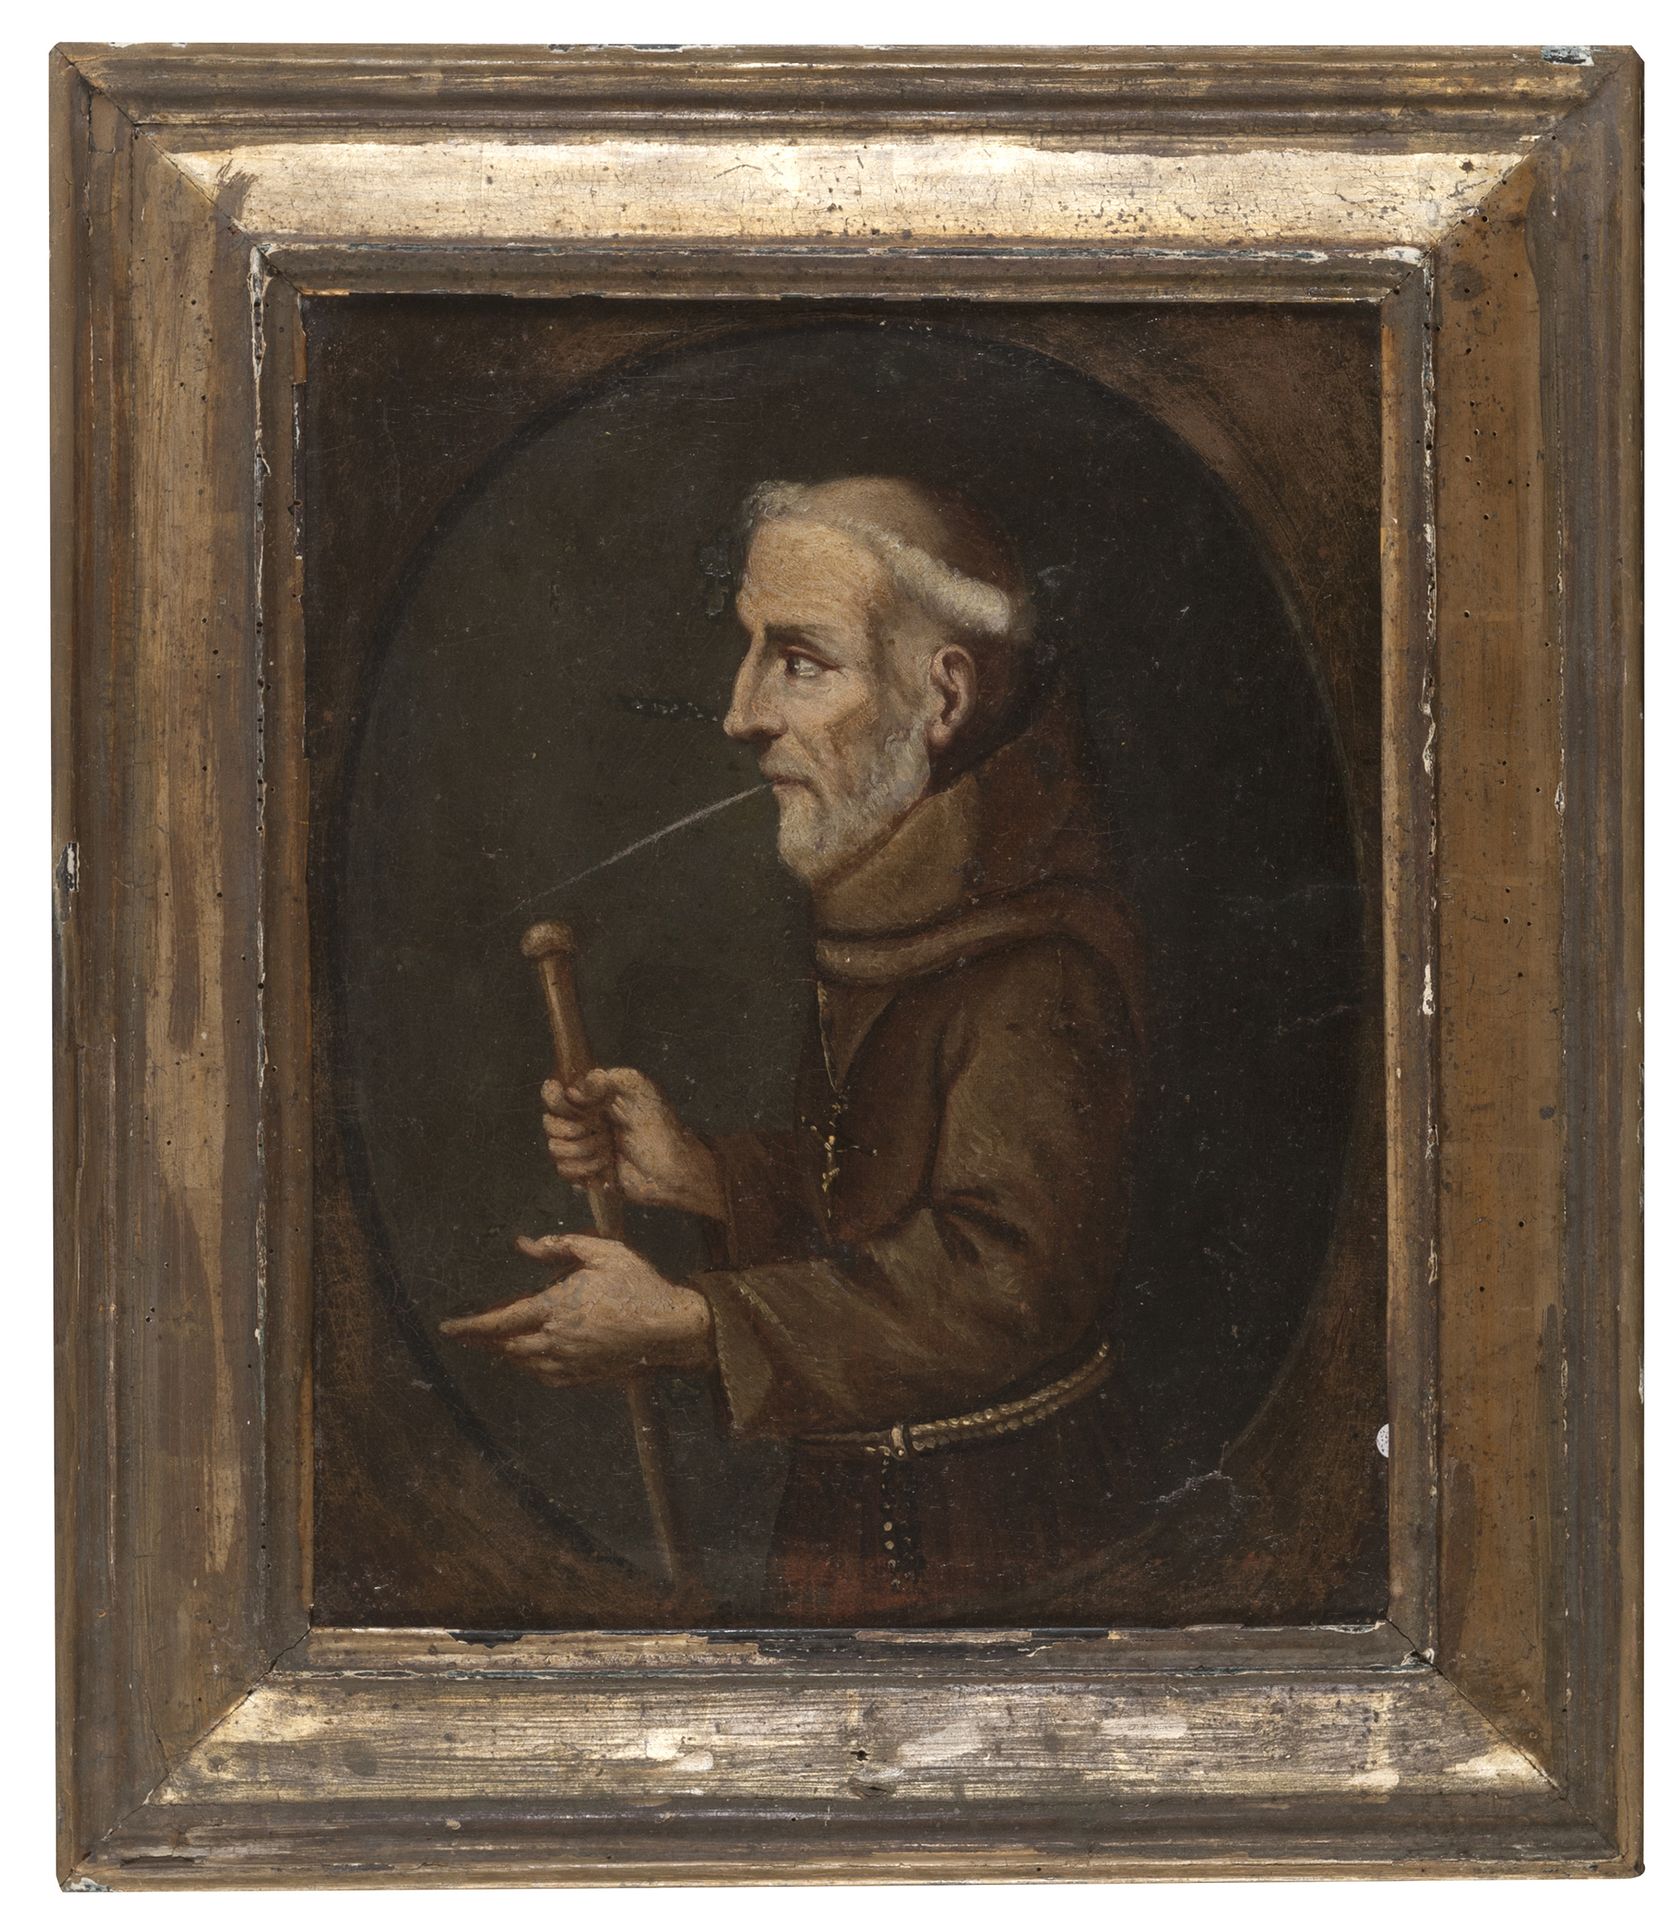 Null PITTORE LOMBARDO, XVIII SECOLO



Frate eremita

Olio su tela, cm. 38 x 31
&hellip;